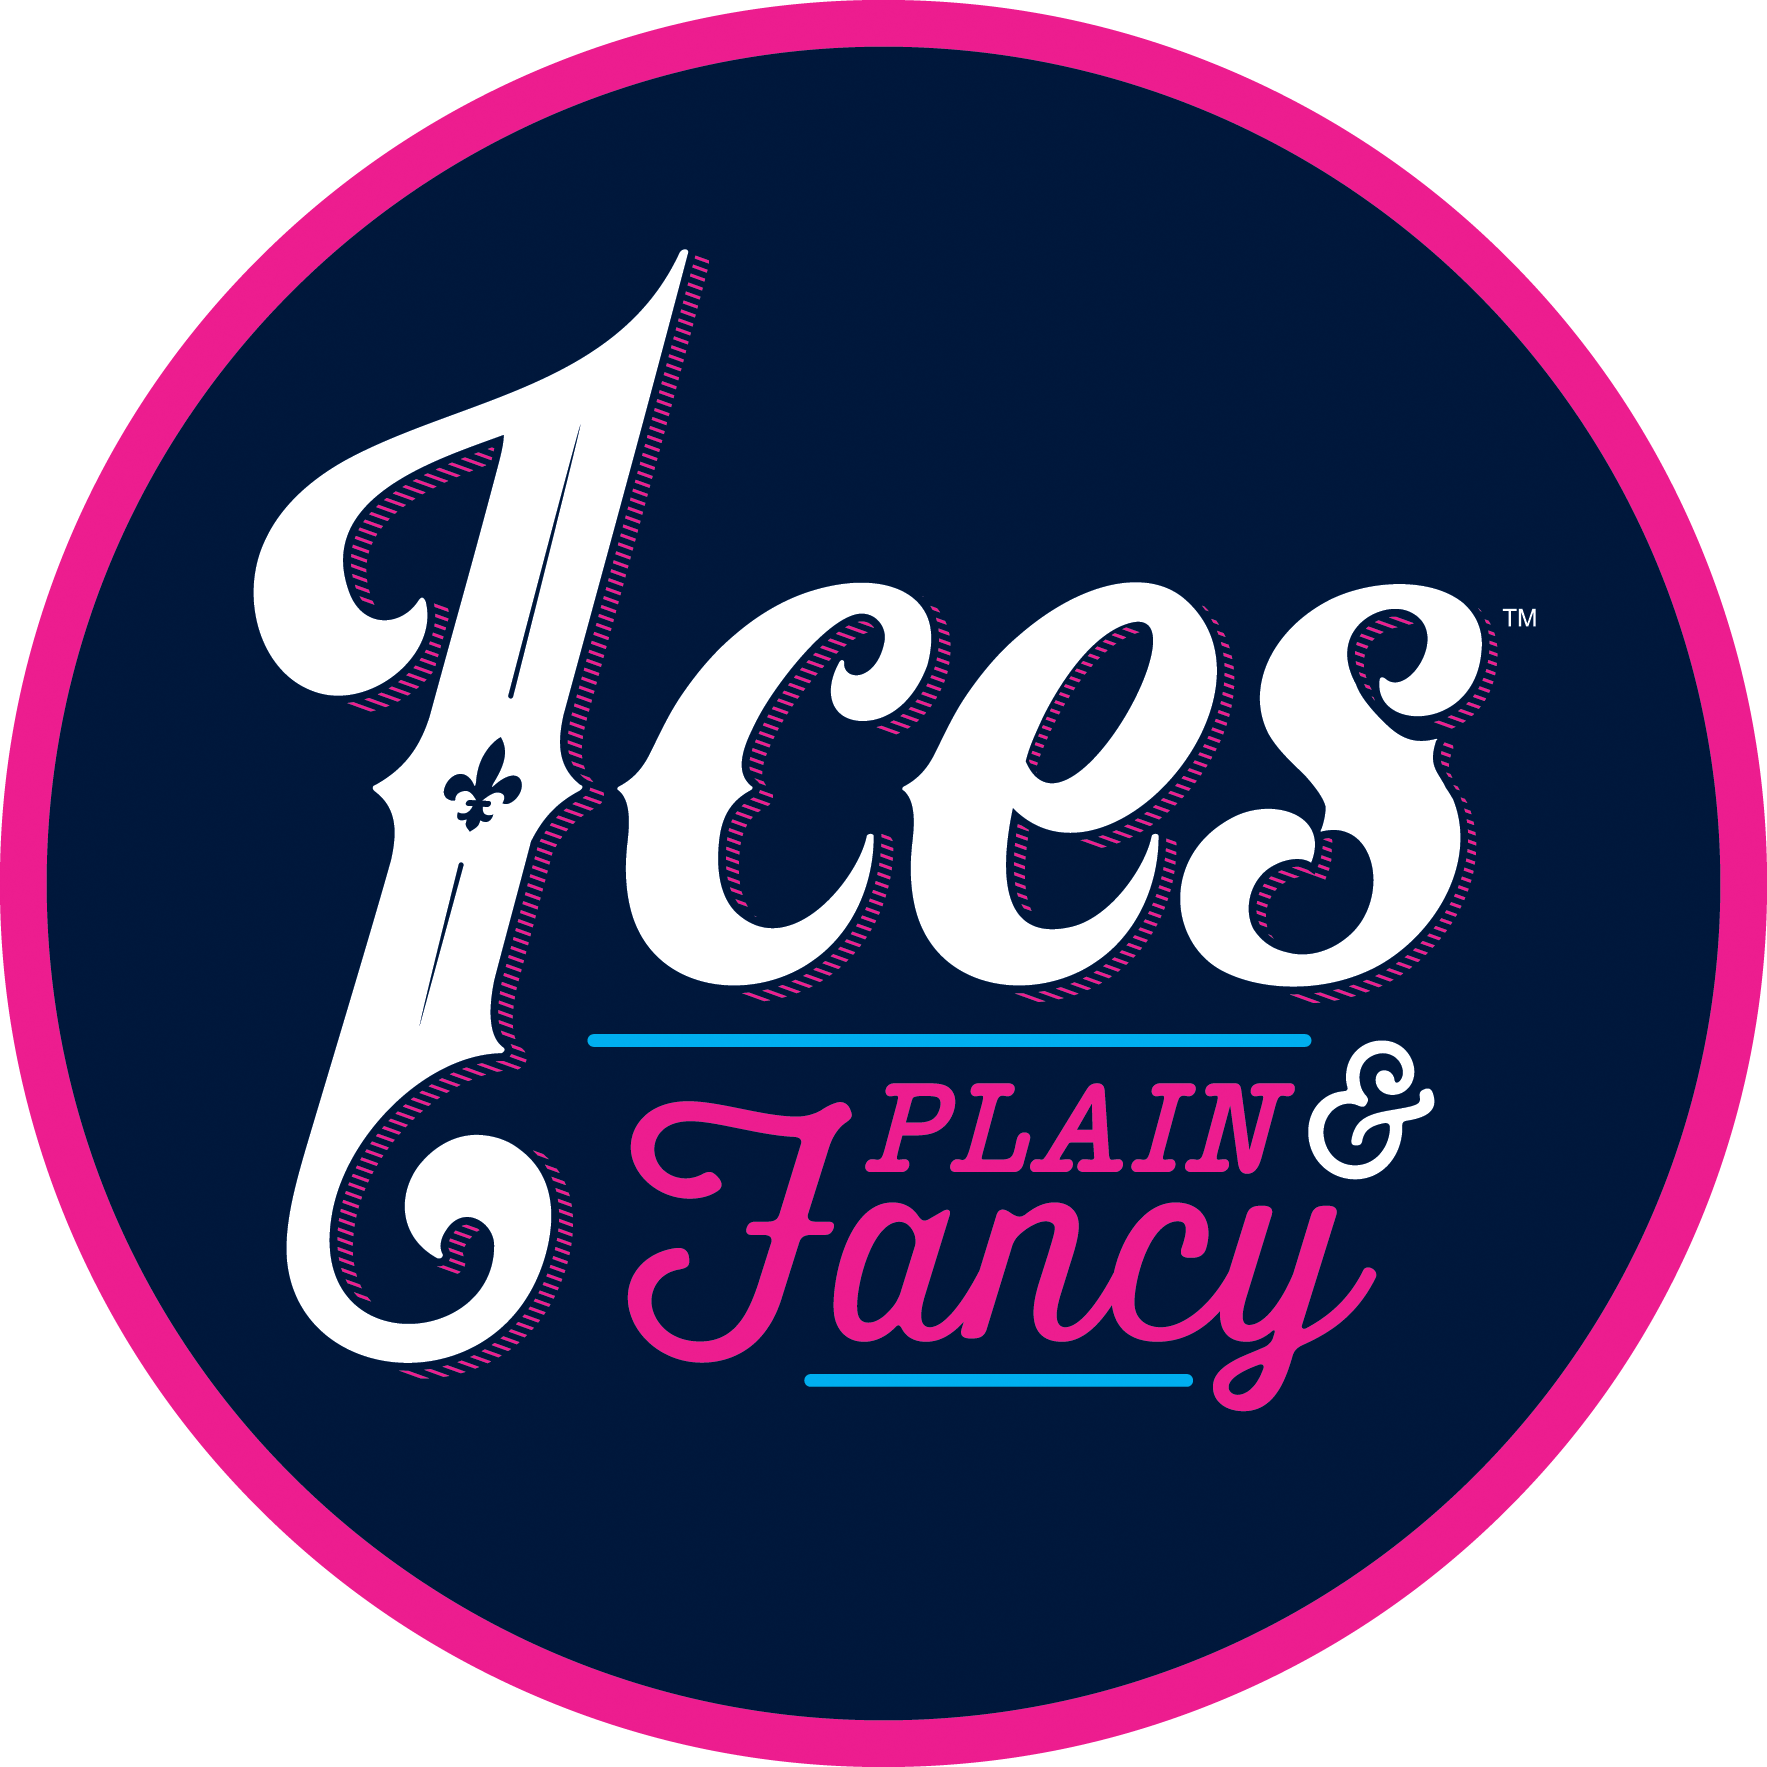 Ices Plain & Fancy